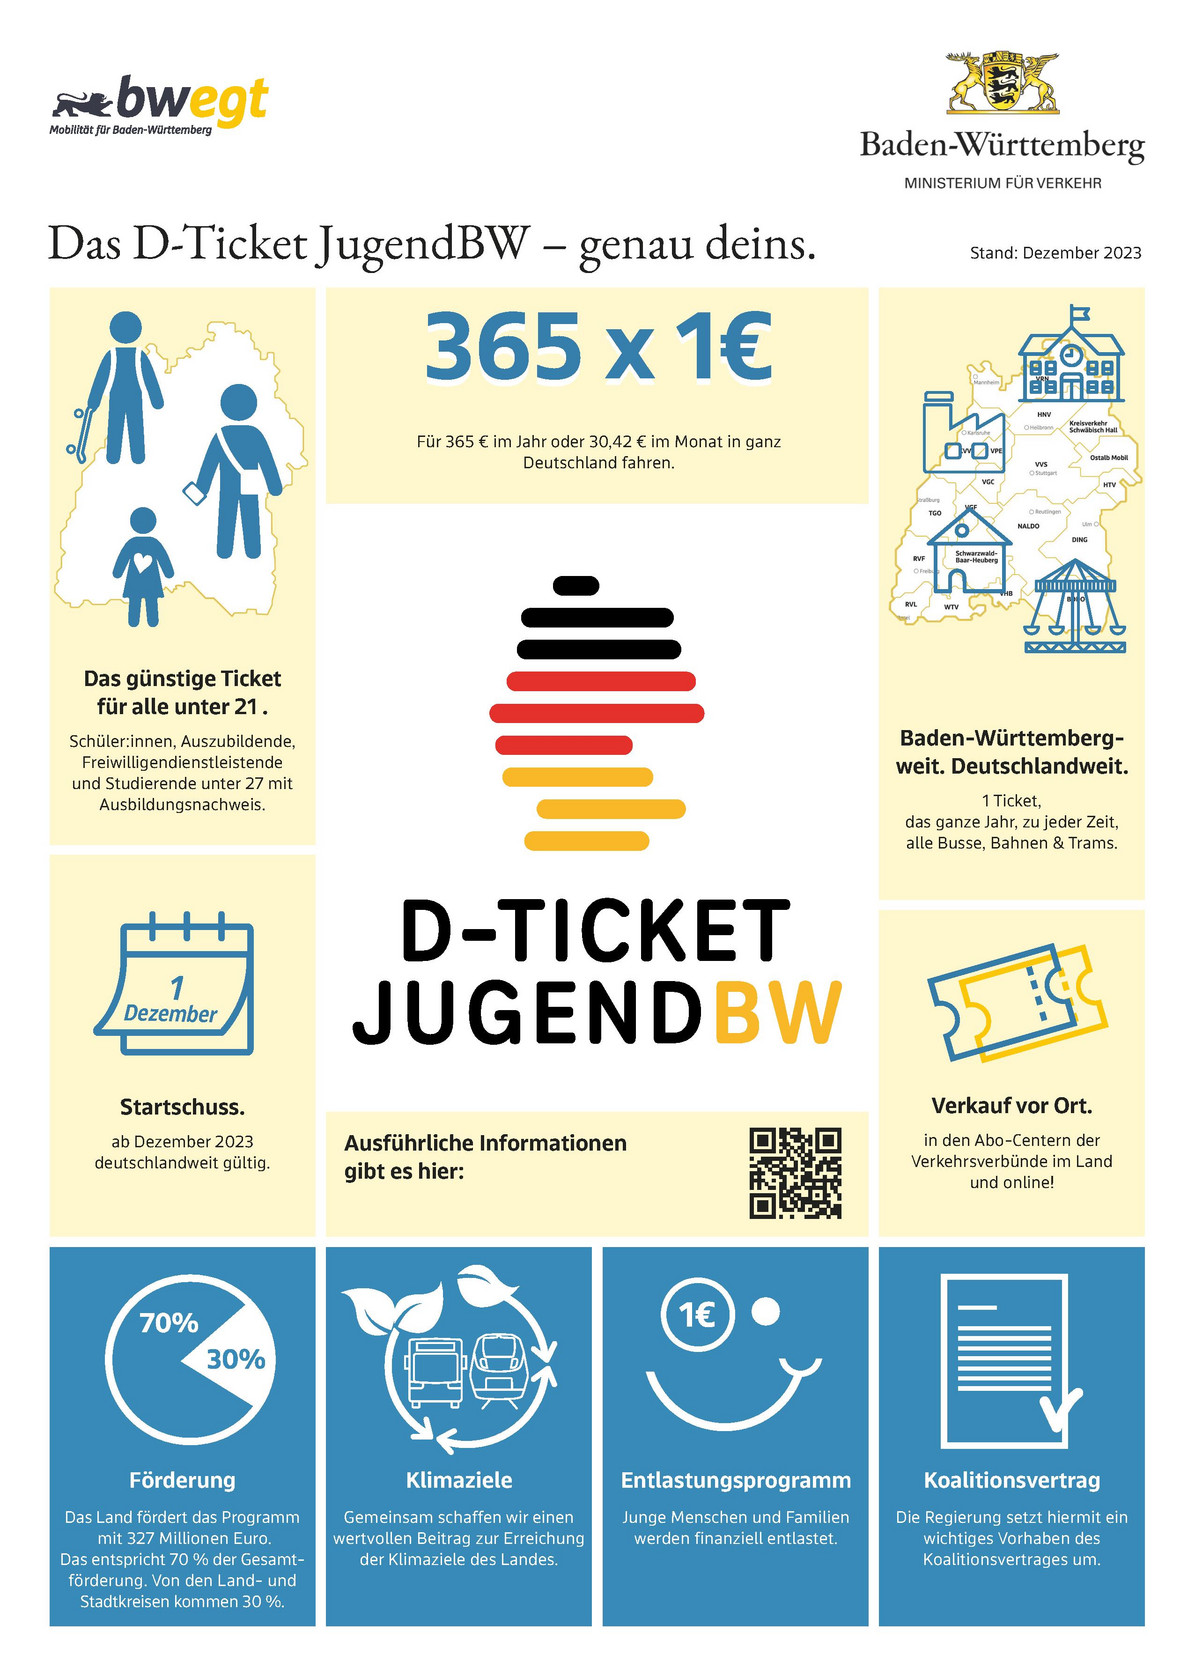 Infografik zum D-Ticket JugendBW